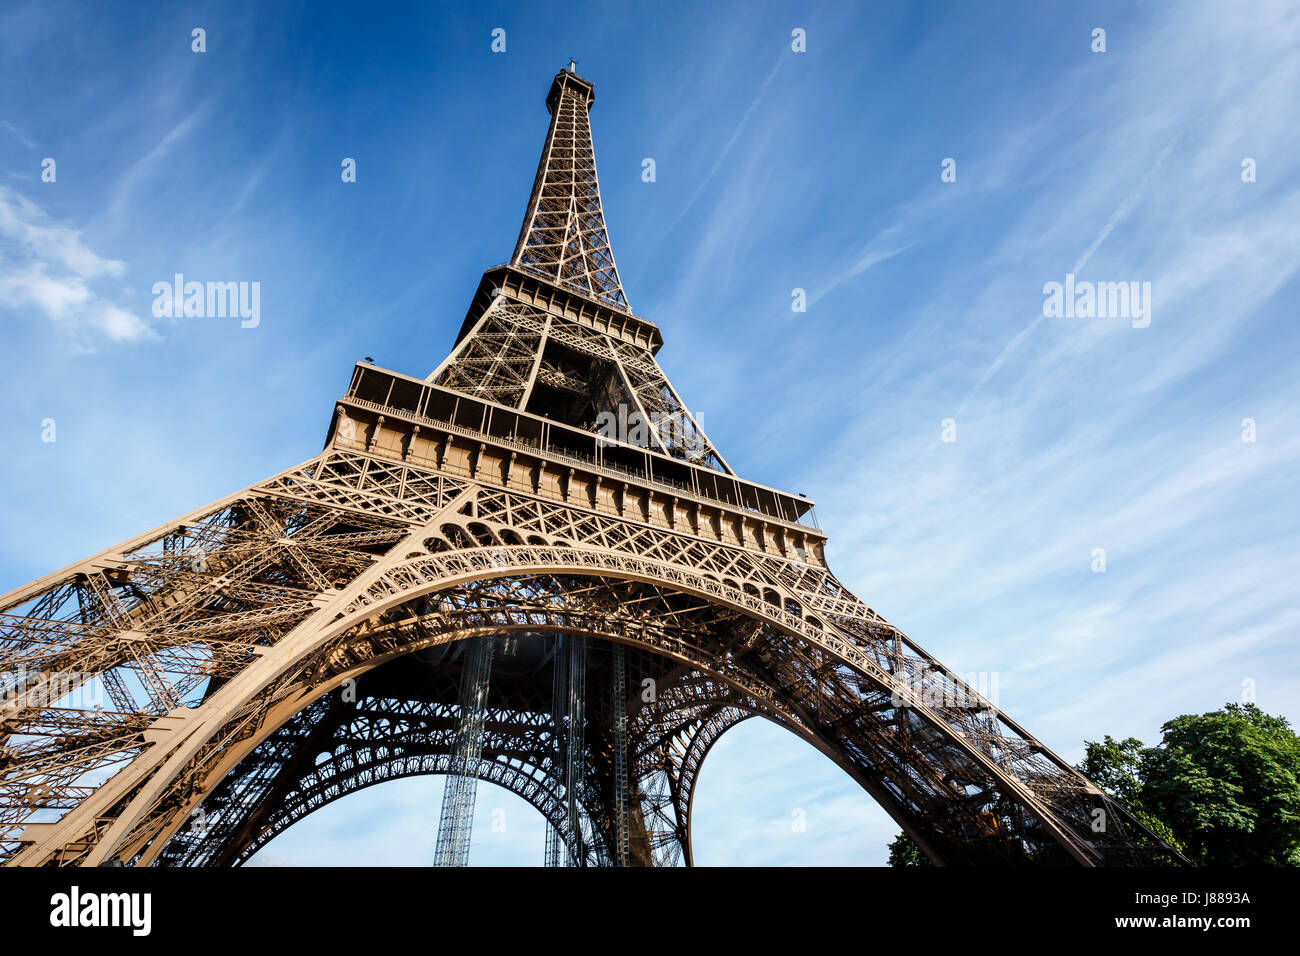 Paris vue de la Tour Eiffel - La terre est un jardin